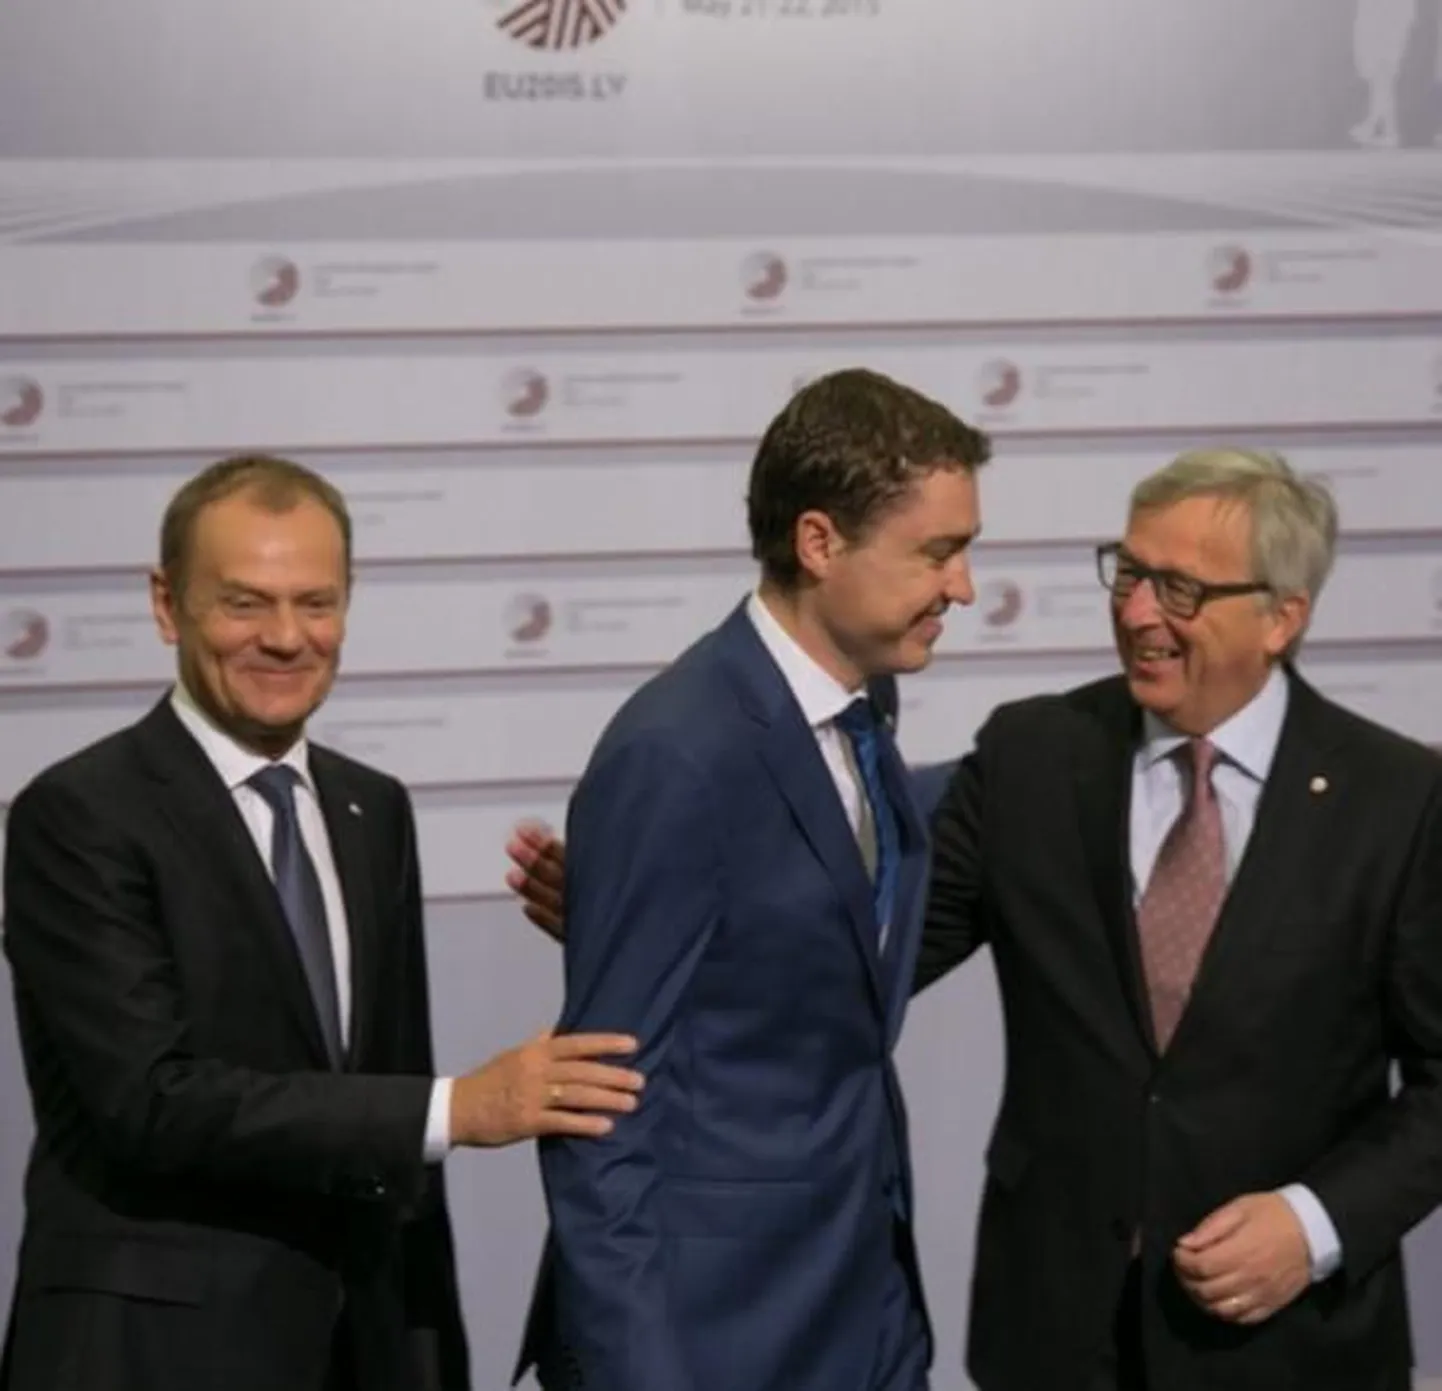 Foto Taavi Rõivase Instagramis. Pildil (vasakult): Euroopa Ülemkogu eesistuja Donald Tusk, Eesti peaminister Taavi Rõivas ja Euroopa Komisjoni president Jean-Claude Juncker.